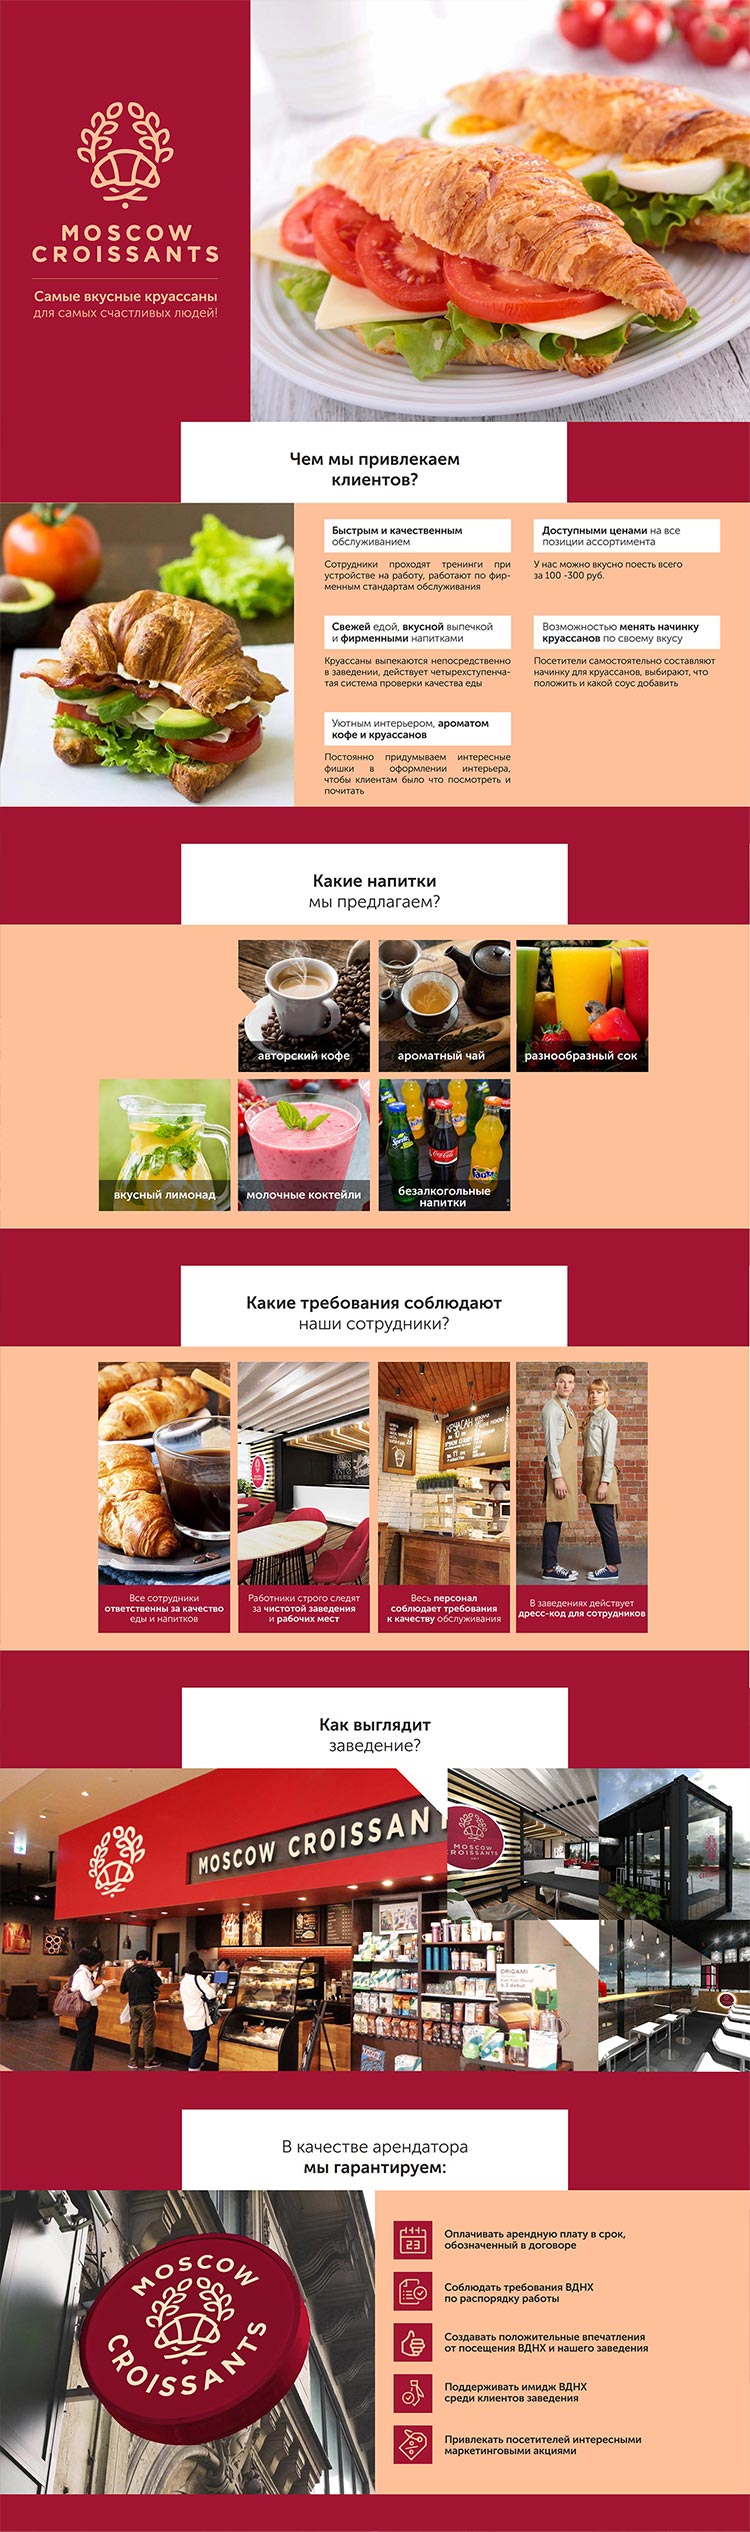 Презентация кафе Moscow Croissants для аренды места в торговом центре для клиента